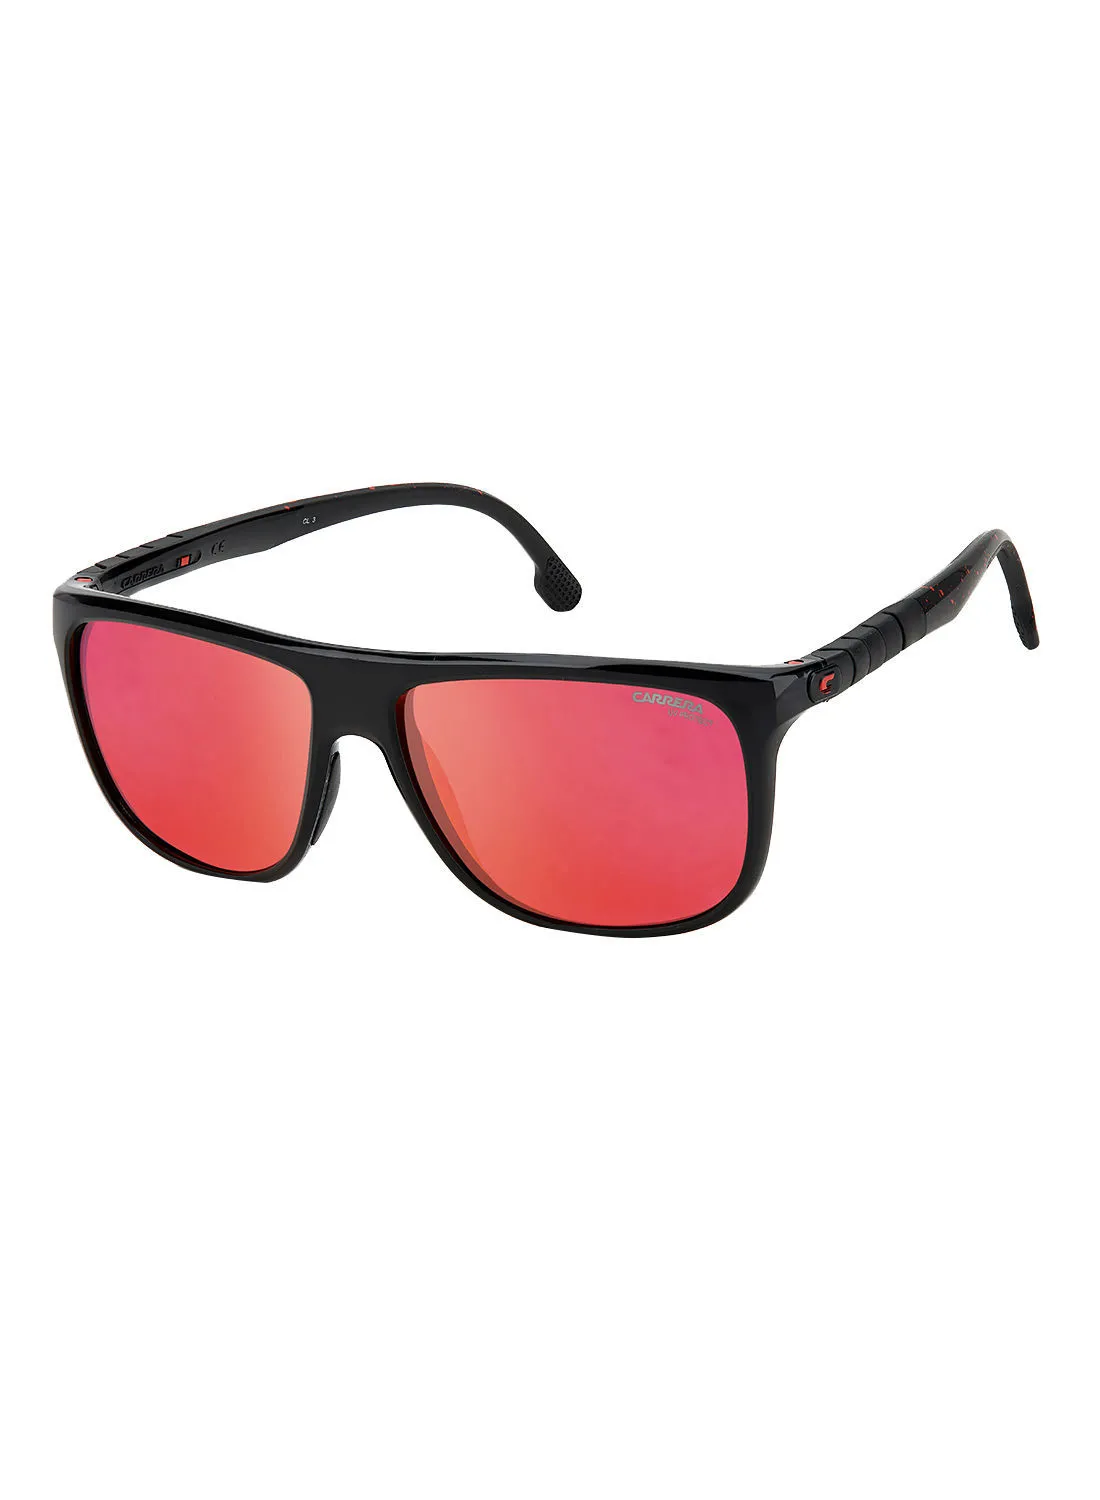 CARRERA نظارة شمسية مستطيلة للحماية من الأشعة فوق البنفسجية HYPERFIT 17 / S أسود أحمر 58